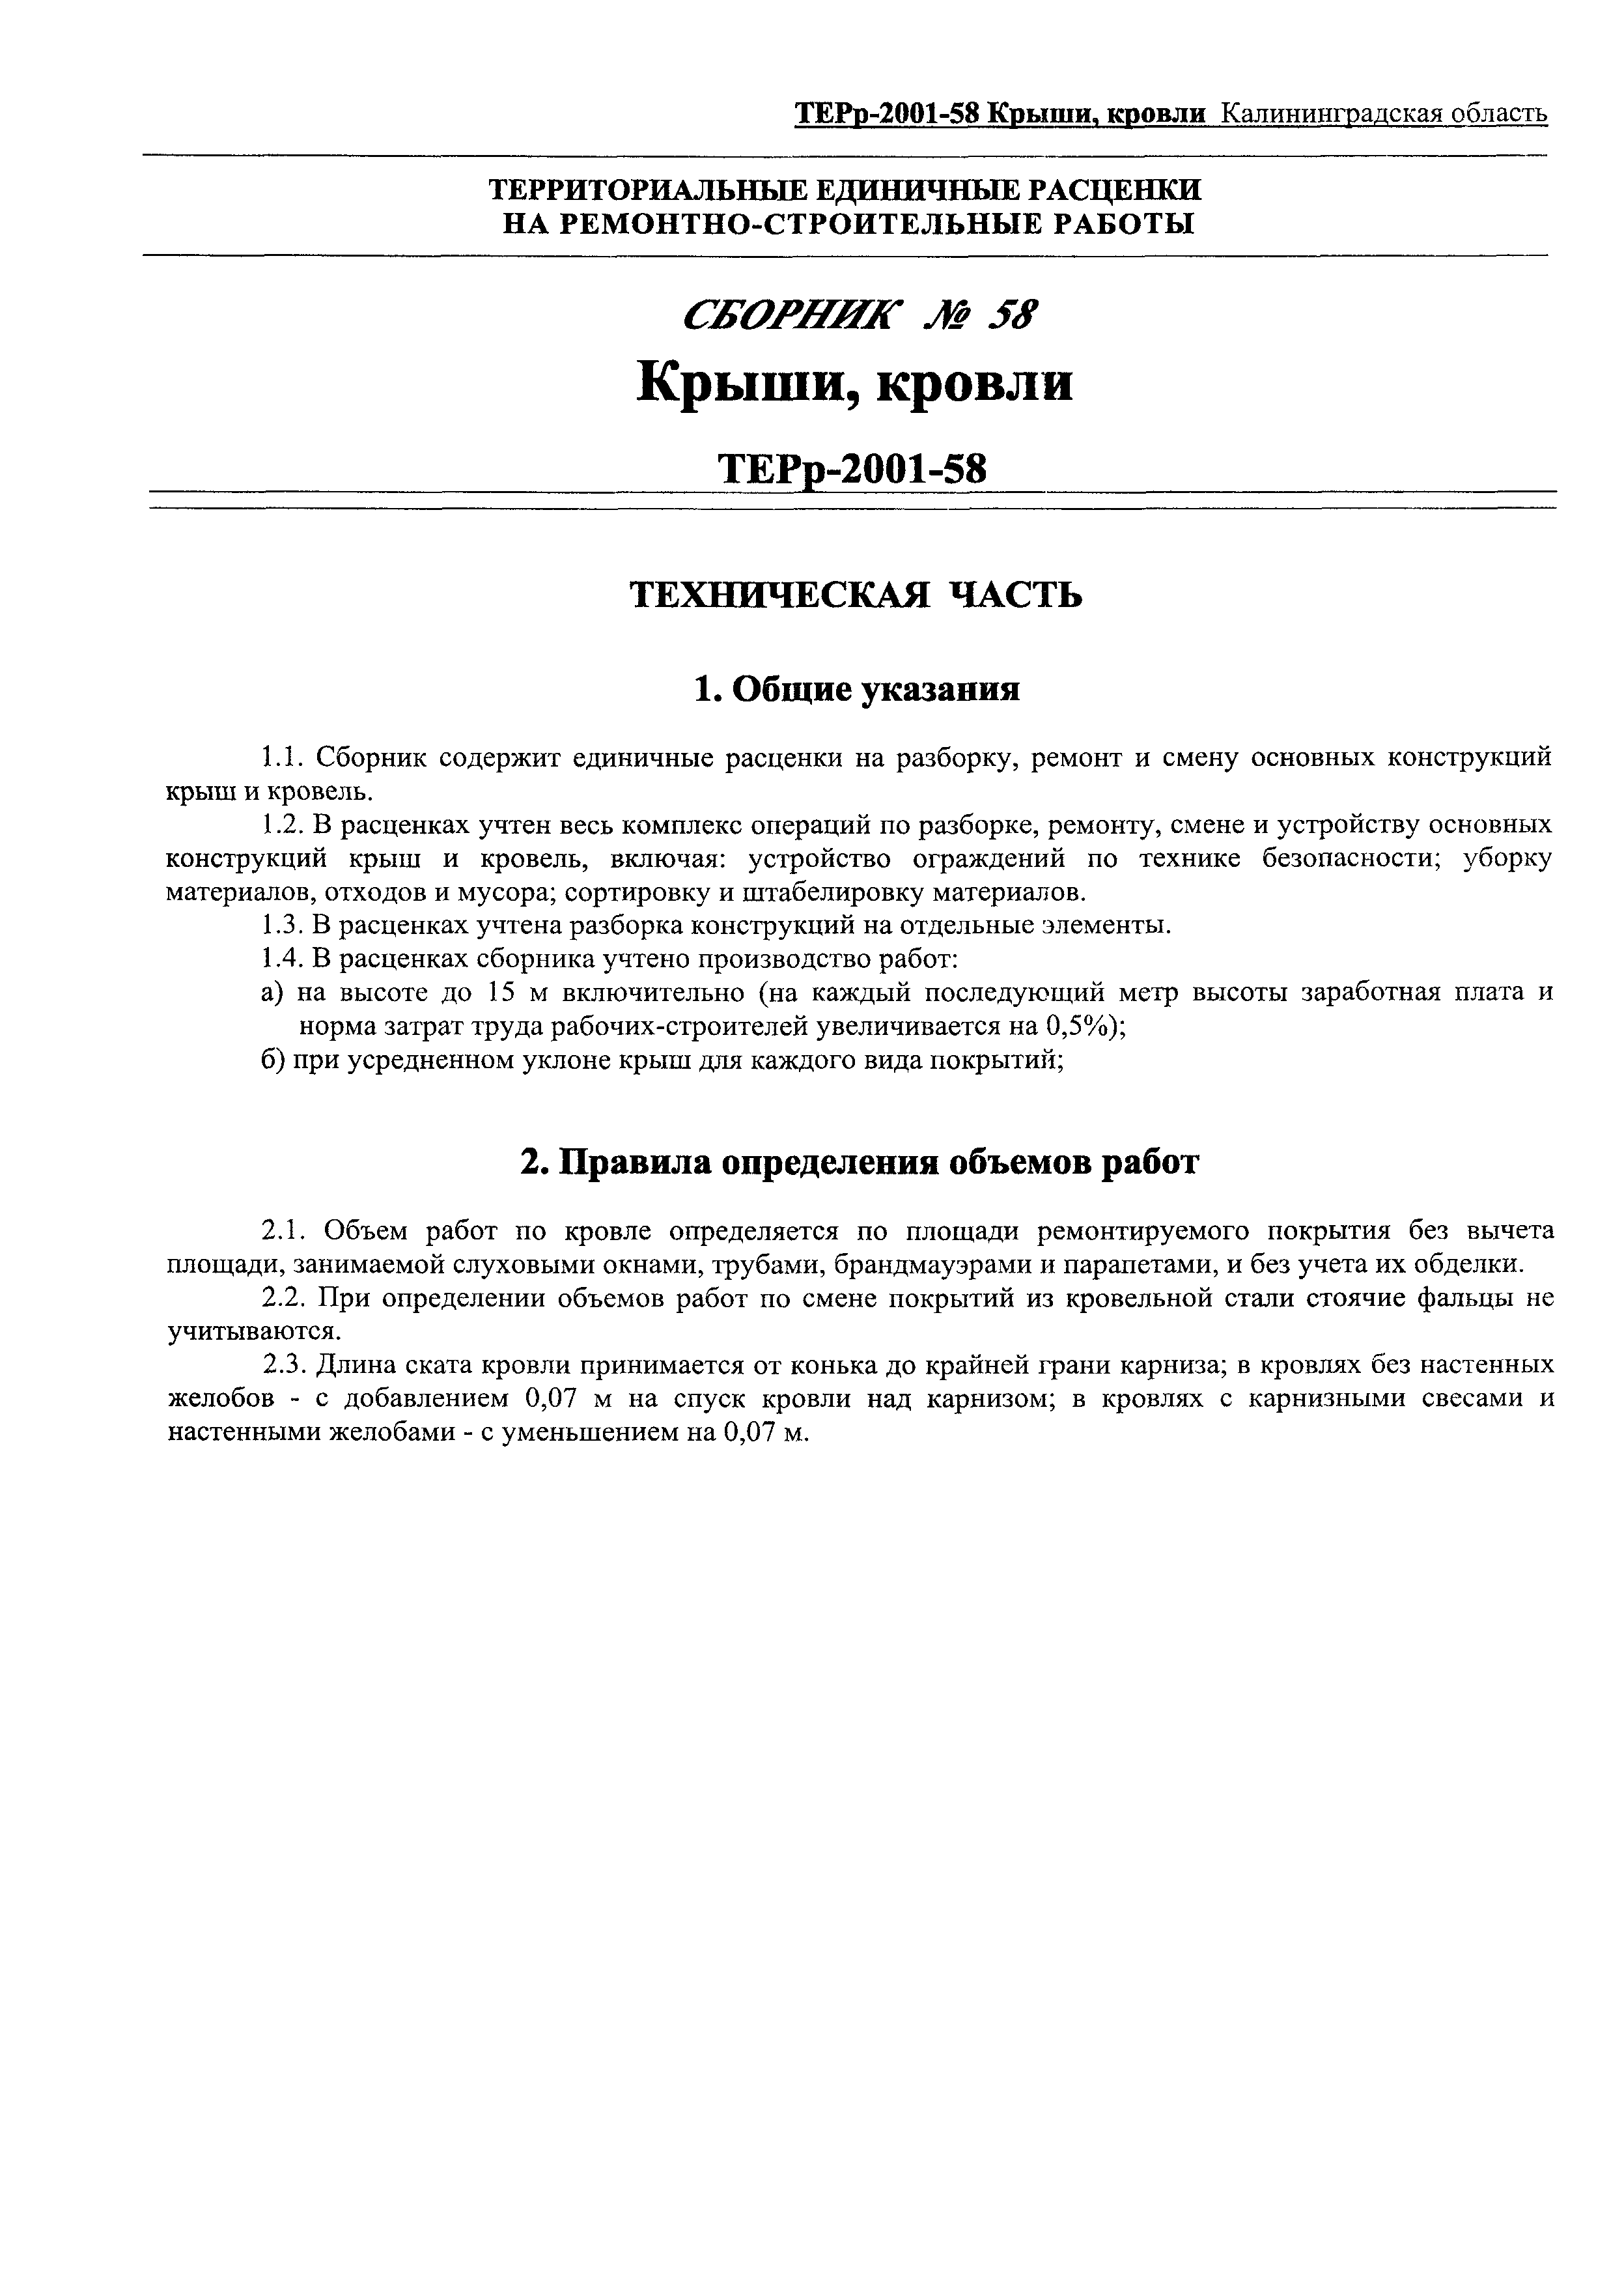 ТЕРр Калининградская область 2001-58